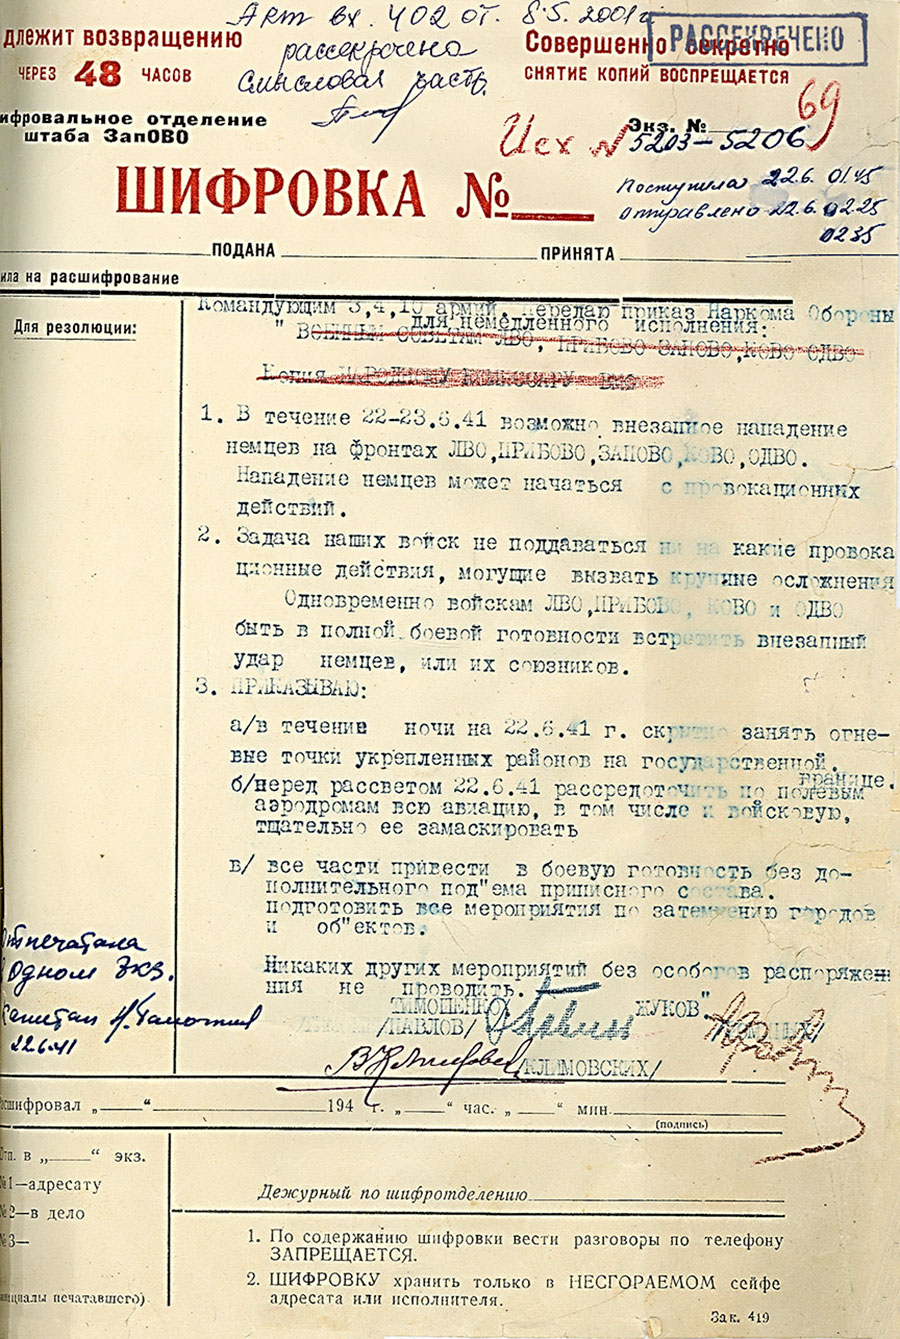 Директива Народного Комиссара Обороны СССР №1 от 22 июня 1941 г.